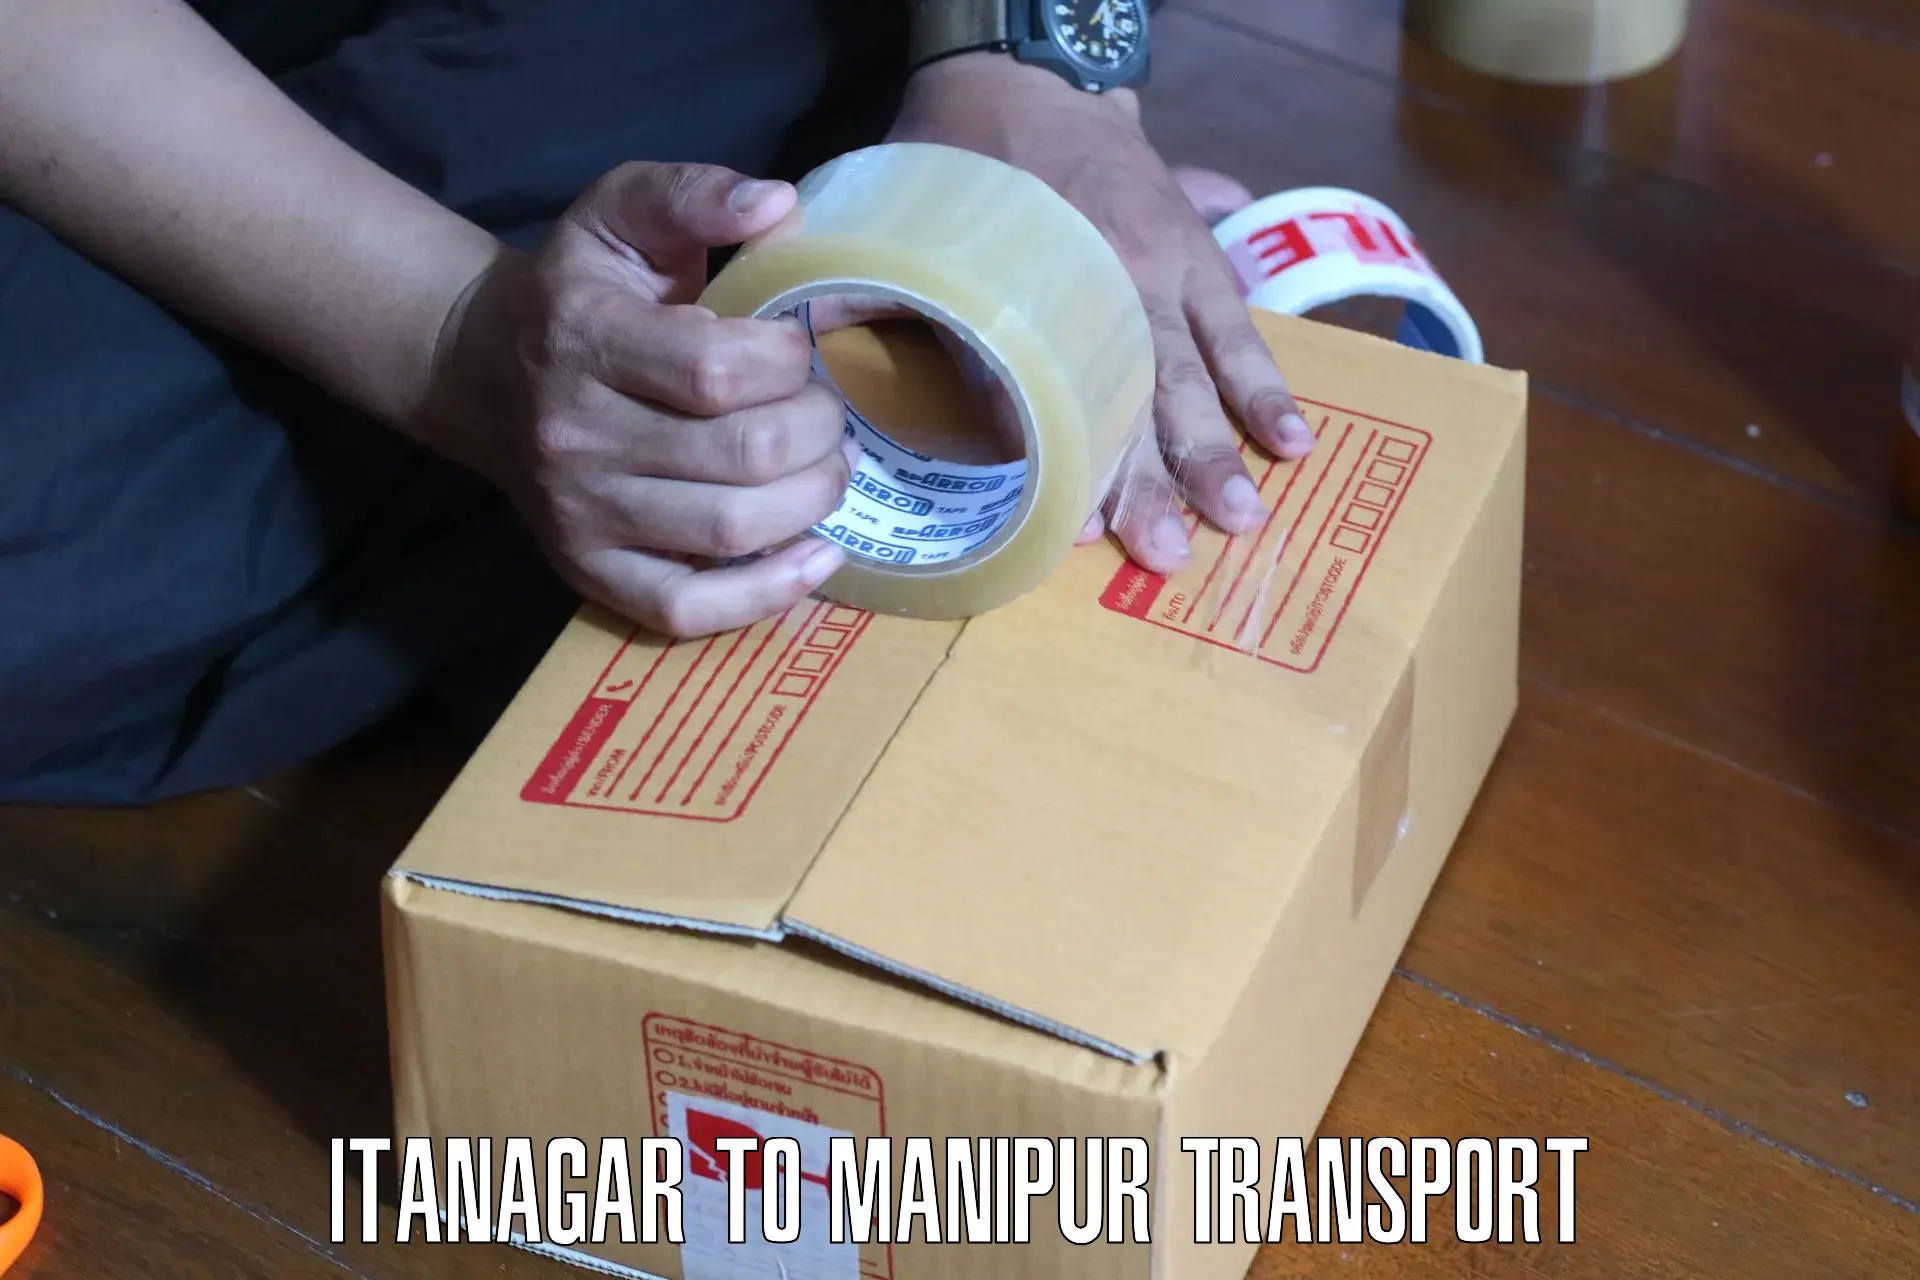 Bike shipping service Itanagar to Manipur